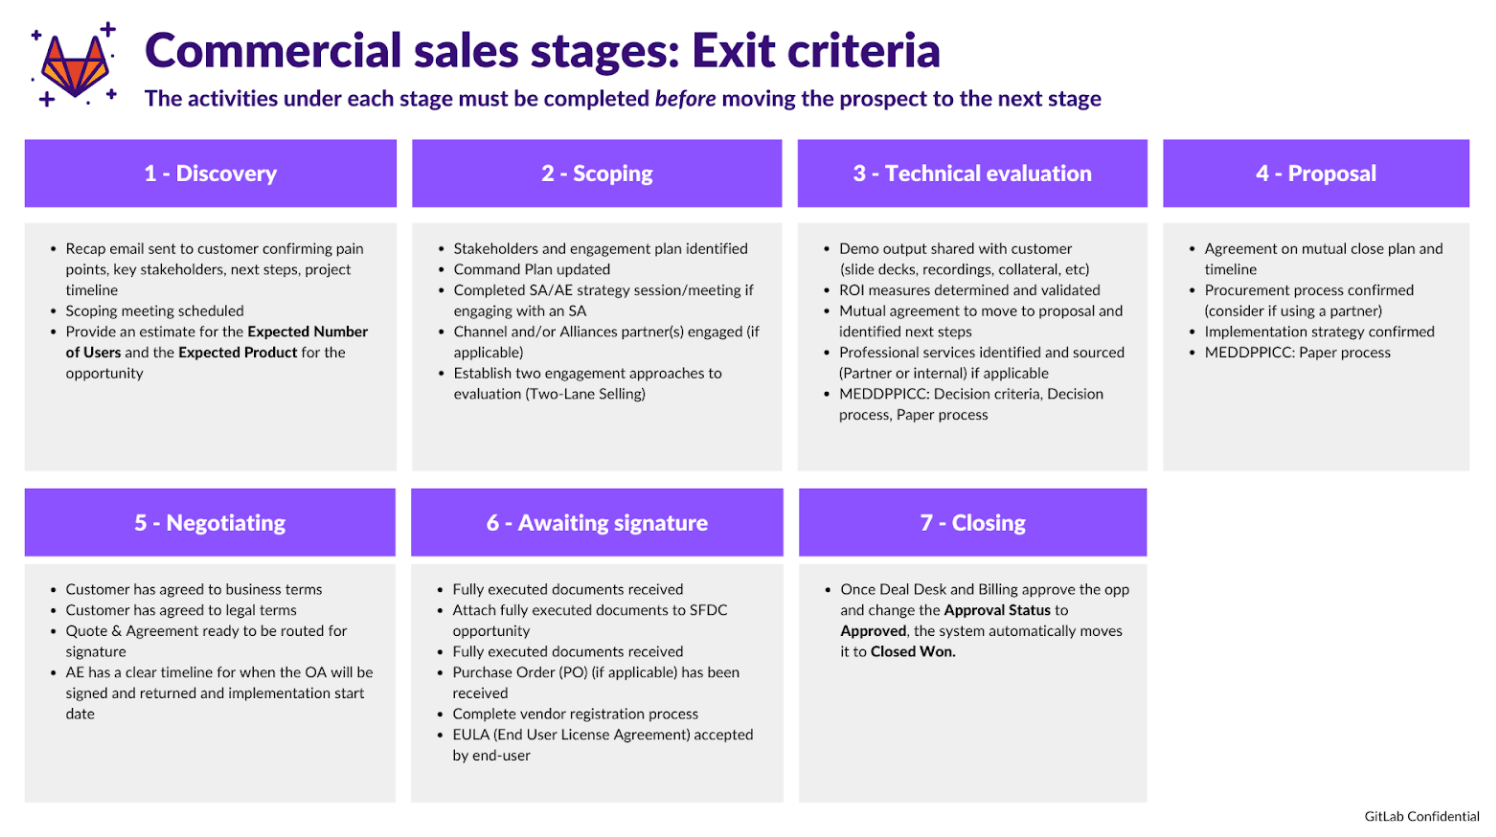 comm-sales-stages-exit-criteria